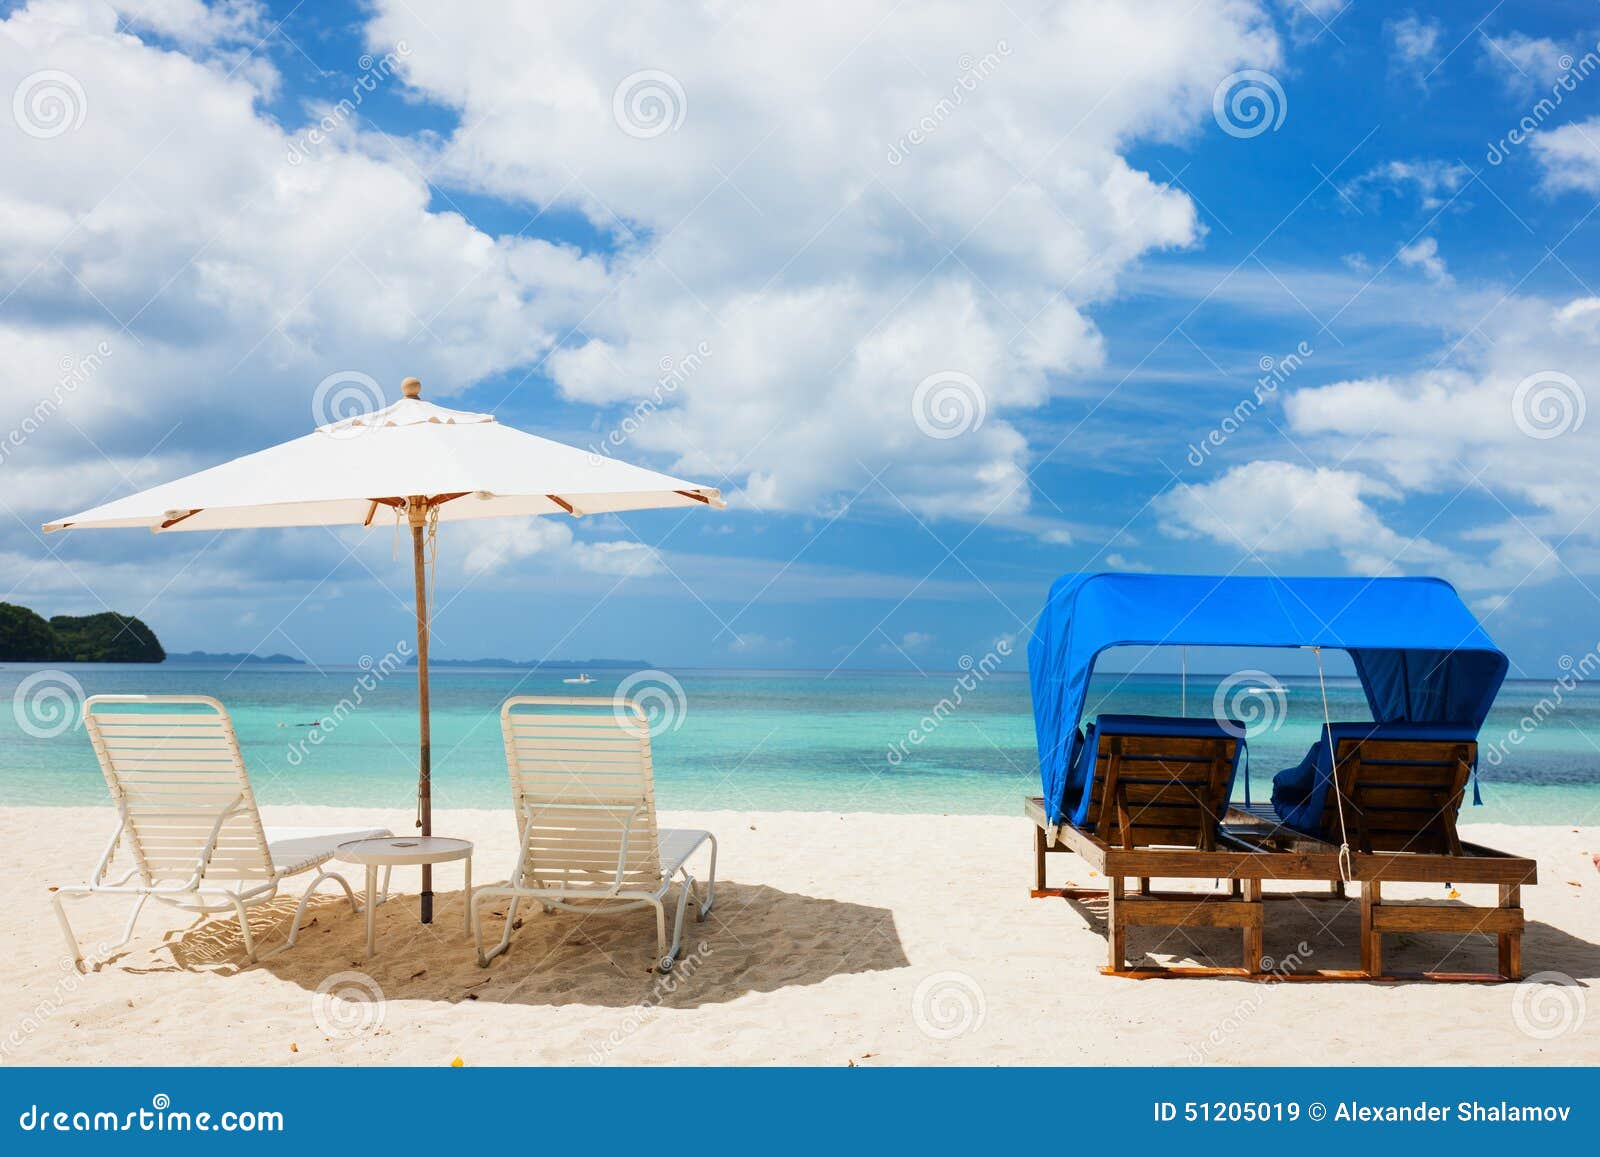 Playa tropical hermosa en la isla exótica. Sillas de playa en la playa tropical hermosa con la arena blanca, agua del océano de la turquesa y el cielo azul en la isla exótica